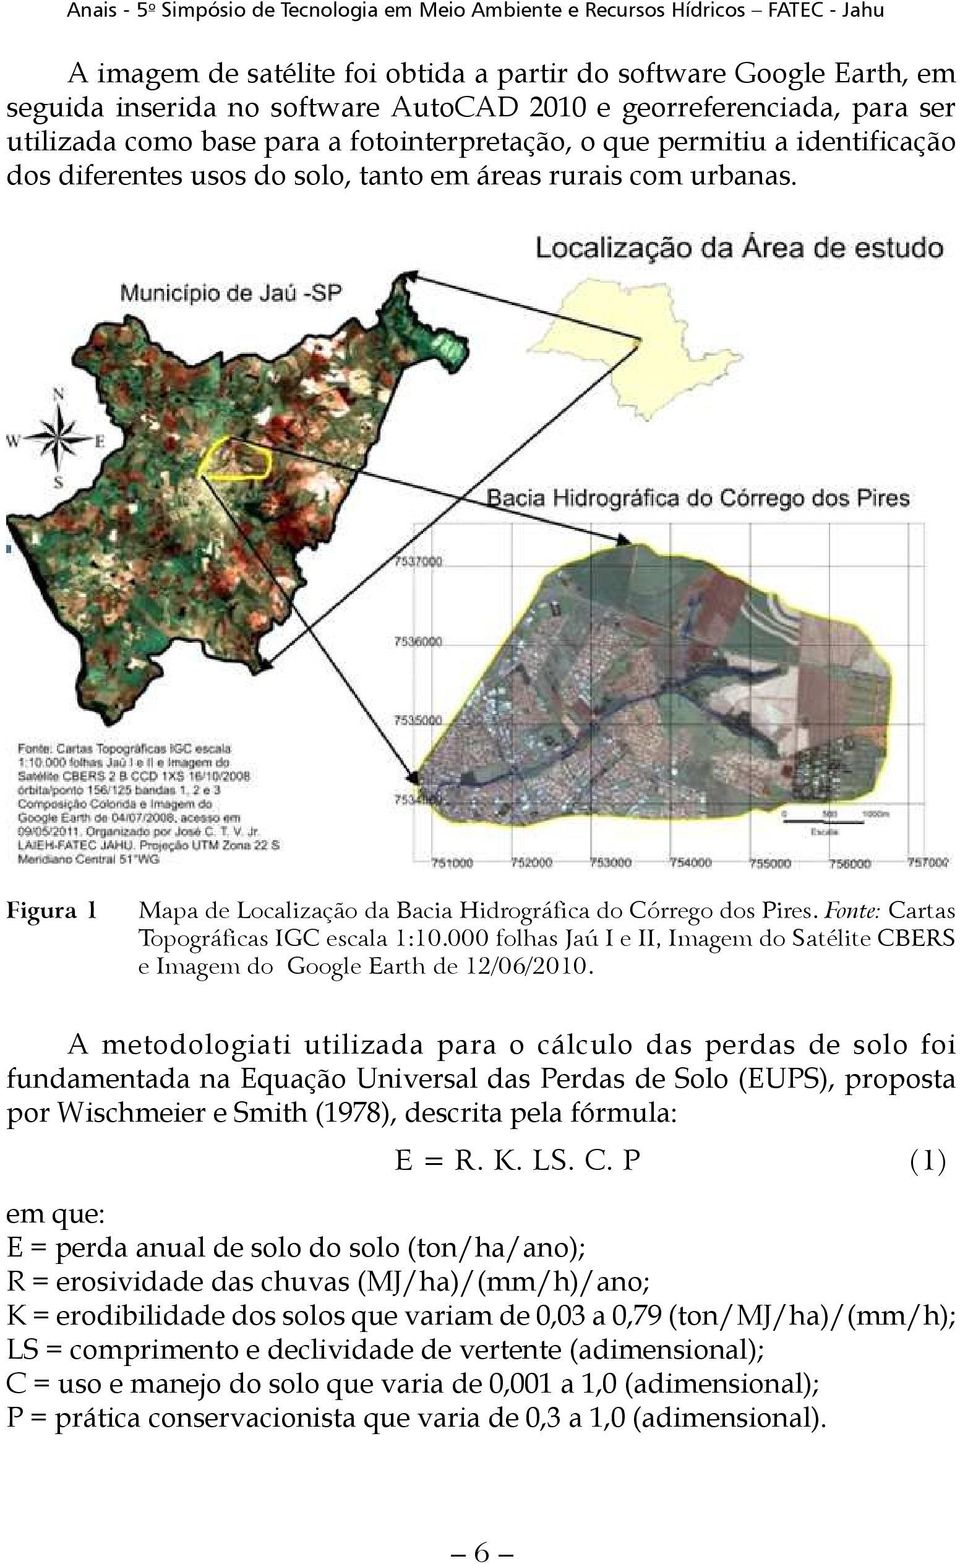 Fonte: Cartas Topográficas IGC escala 1:10.000 folhas Jaú I e II, Imagem do Satélite CBERS e Imagem do Google Earth de 12/06/2010.